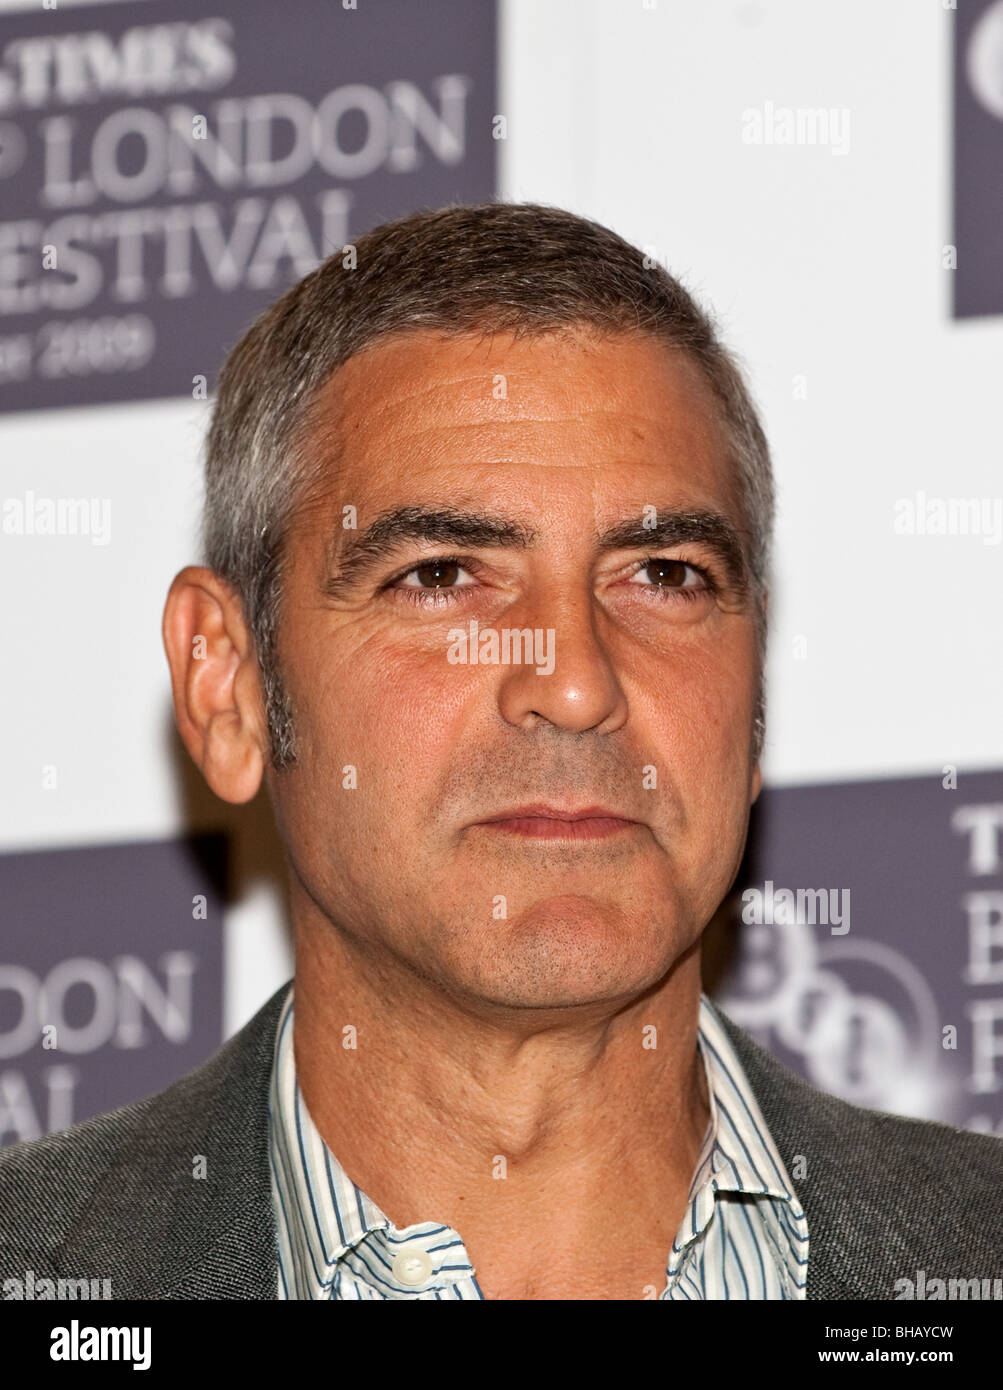 George Clooney besucht die Pressekonferenz für "Fantastic Mr. Fox" im Dorchester Hotel in London. Stockfoto